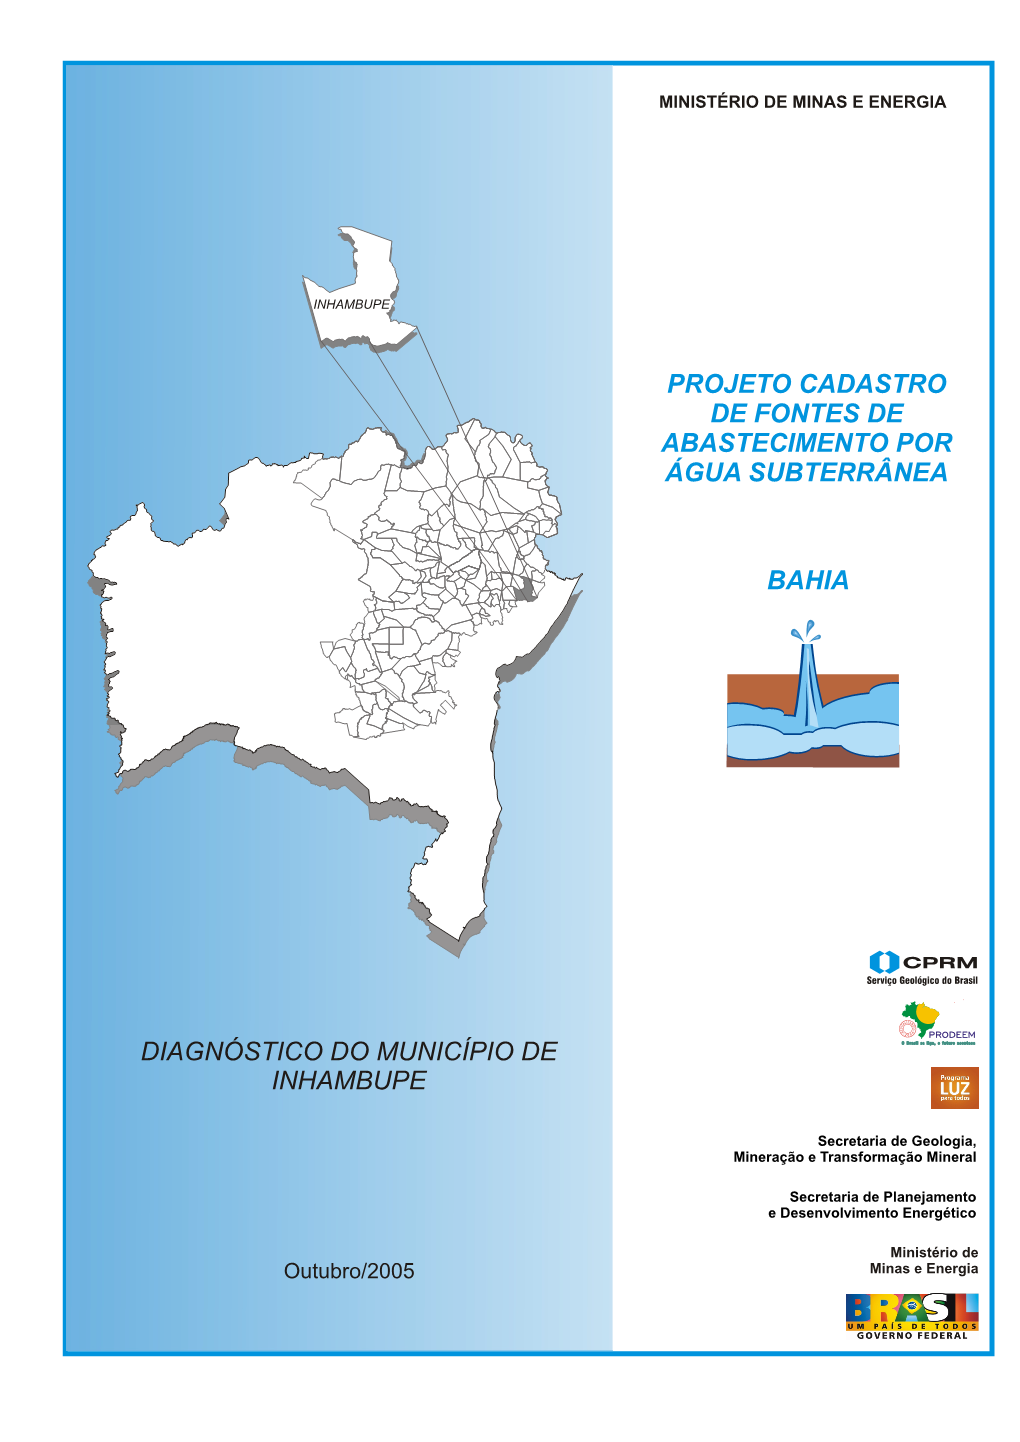 Bahia Projeto Cadastro De Fontes De Abastecimento Por Água Subterrânea